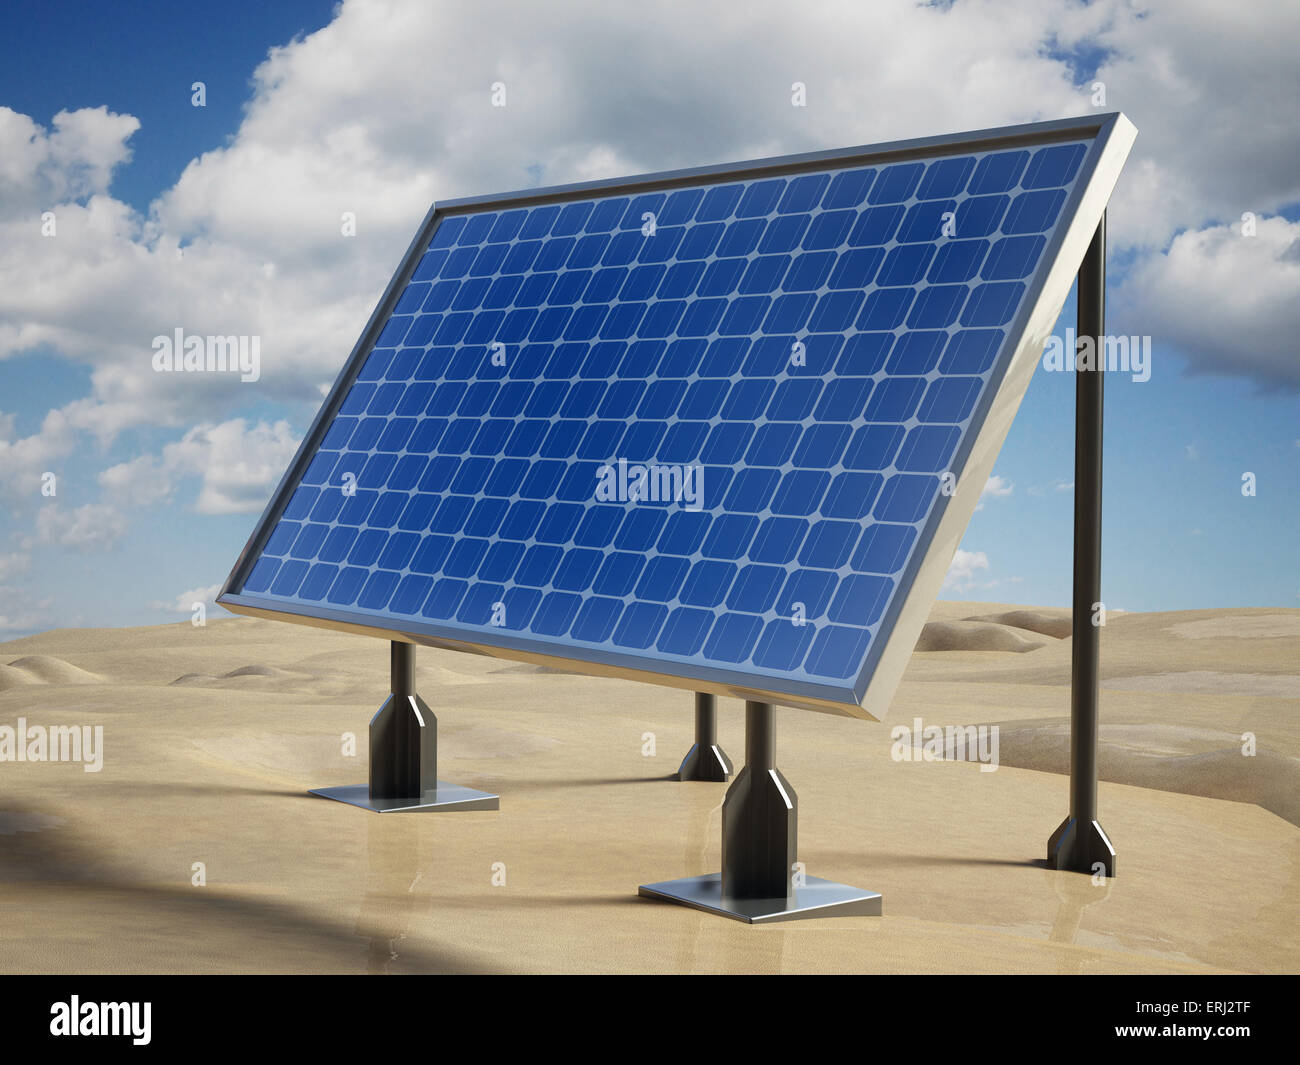 Solar panel on the desert sands. Stock Photo